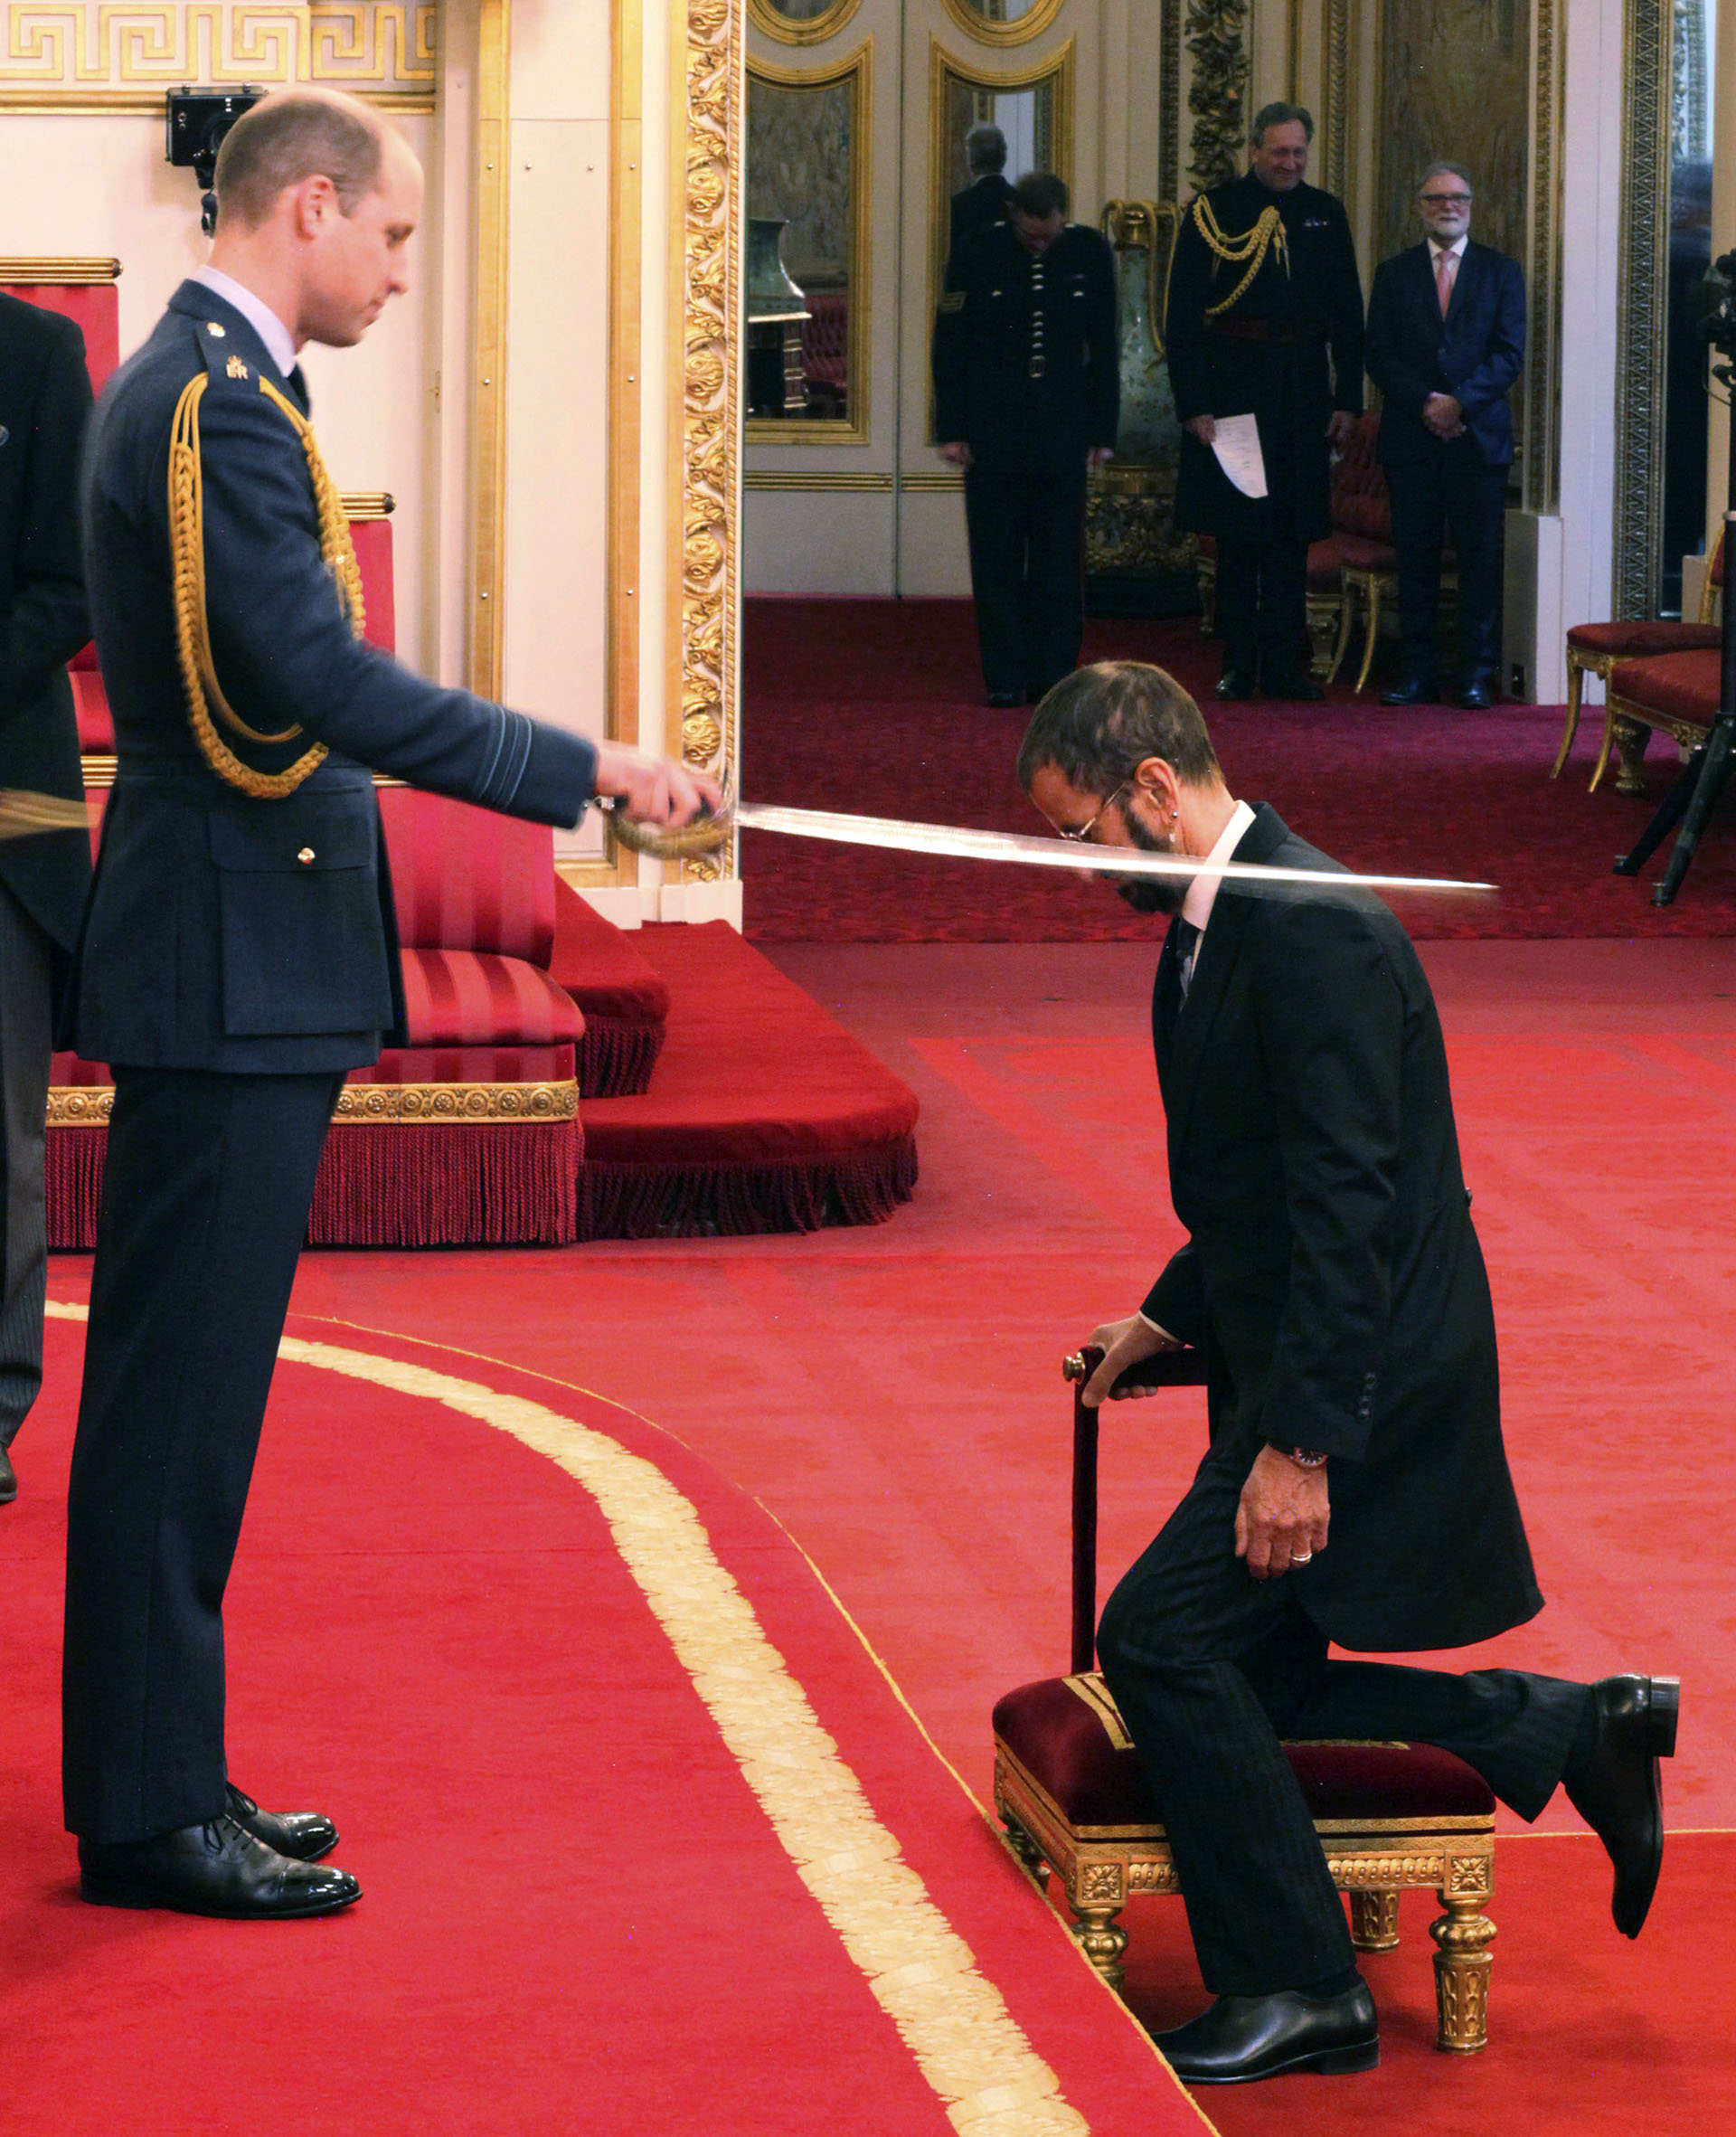 Ringo Starr en 2018 durante su investidura en el Palacio de Buckingham a cargo del Príncipe William (Yui Mok/PA via AP)